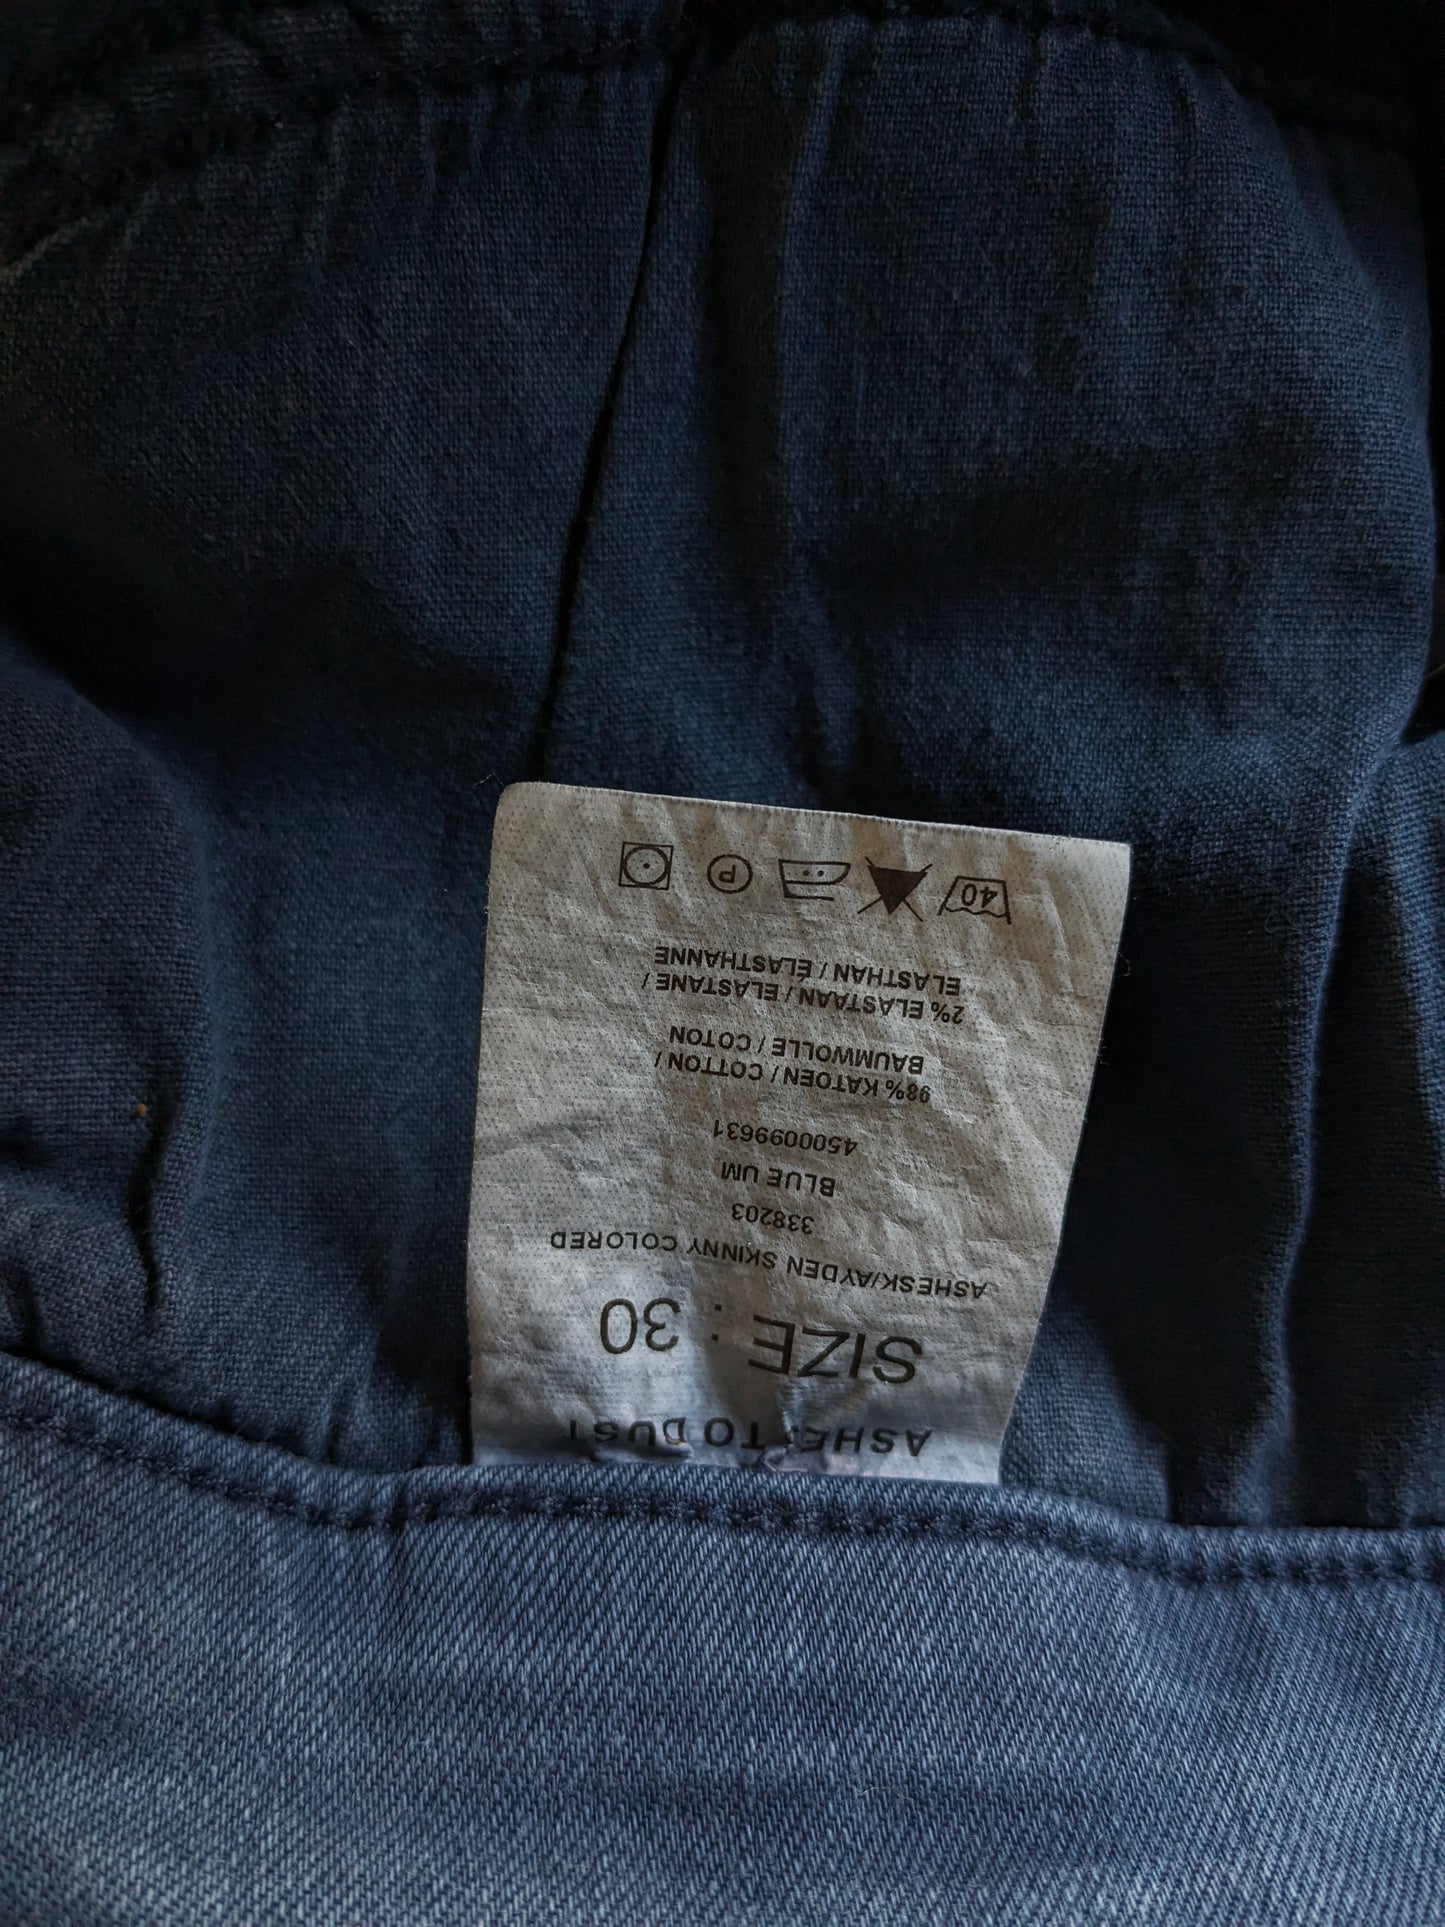 Cenizas a los jeans del polvo. Azul. Tamaño W30 - L26 estiramiento.